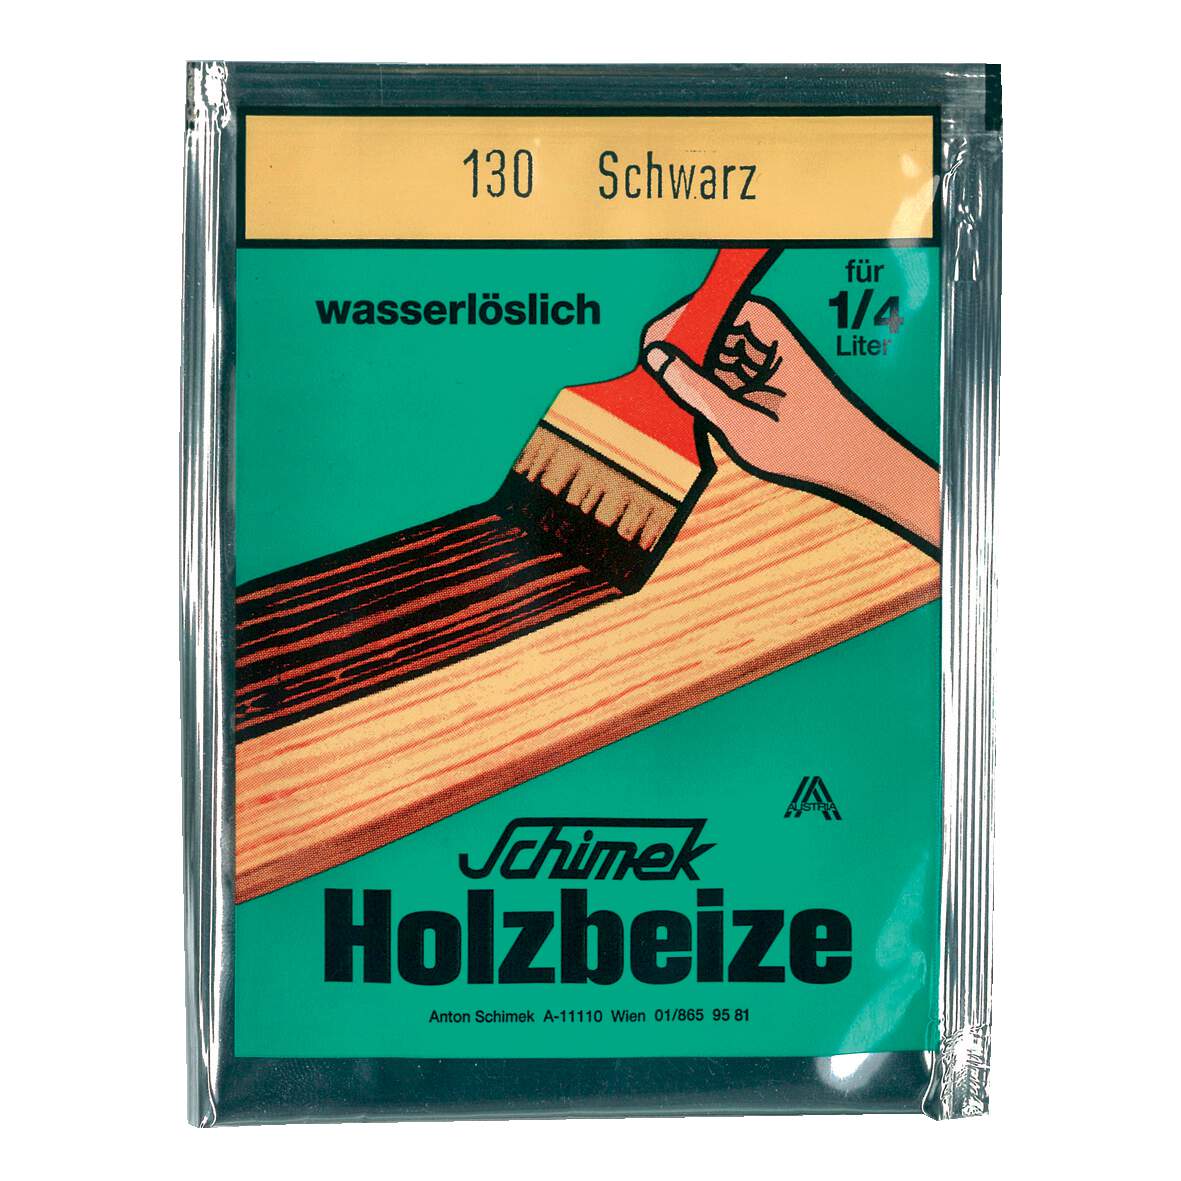 1216620 - Holzbeize wasserlöslich